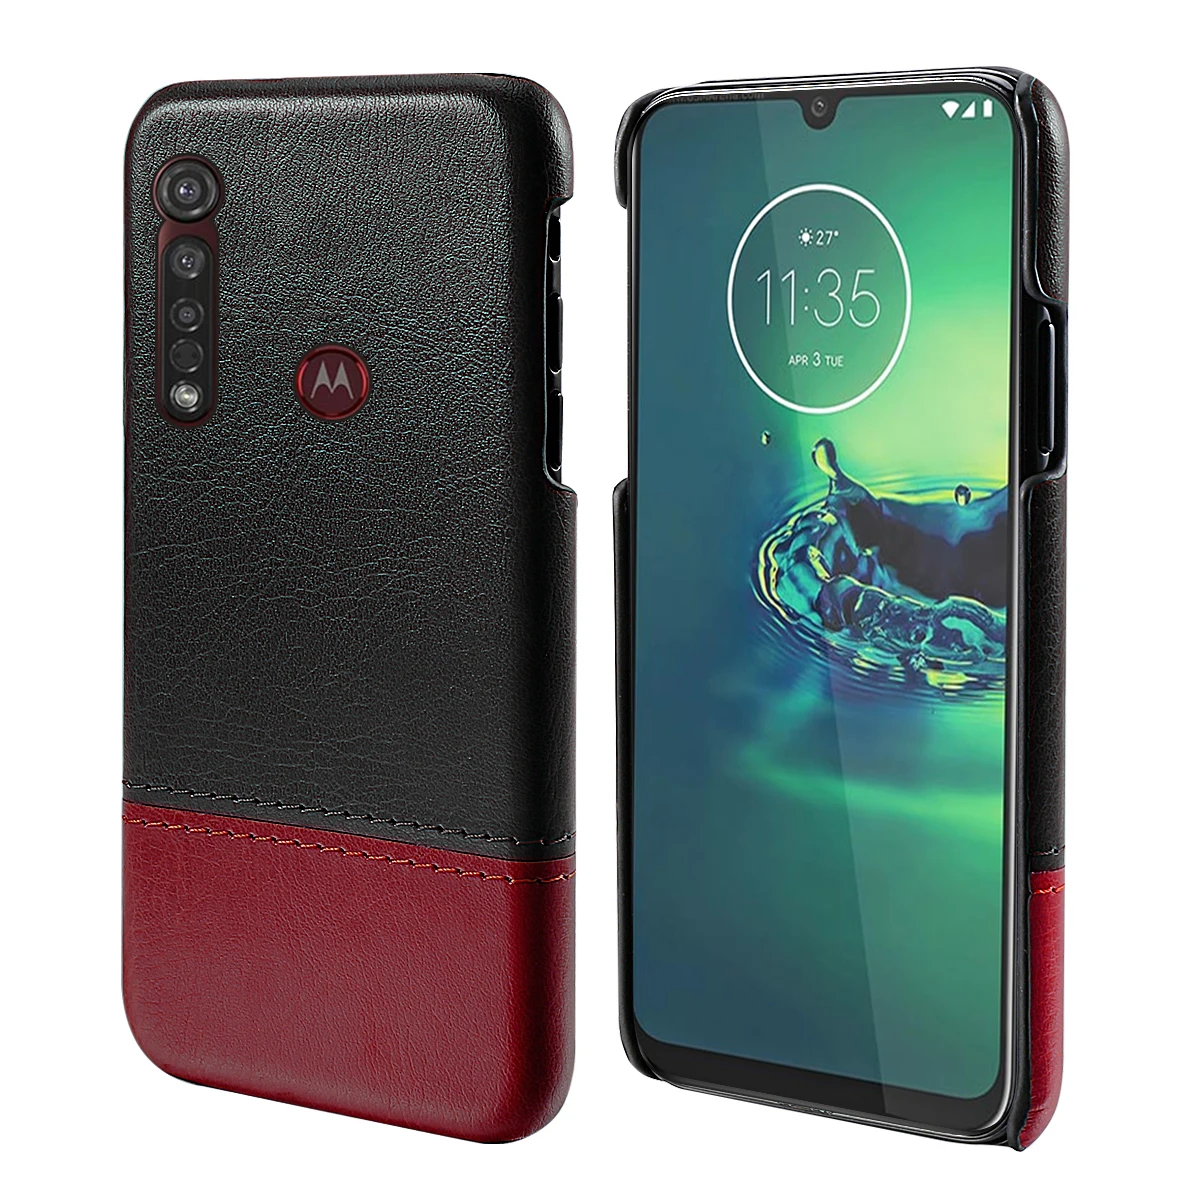 Для Motorola Moto G8 Plus чехол для телефона ультра тонкий контрастный цвет Жесткий PC кожаный чехол Защита от царапин для Moto G8 Plus - Цвет: Коричневый